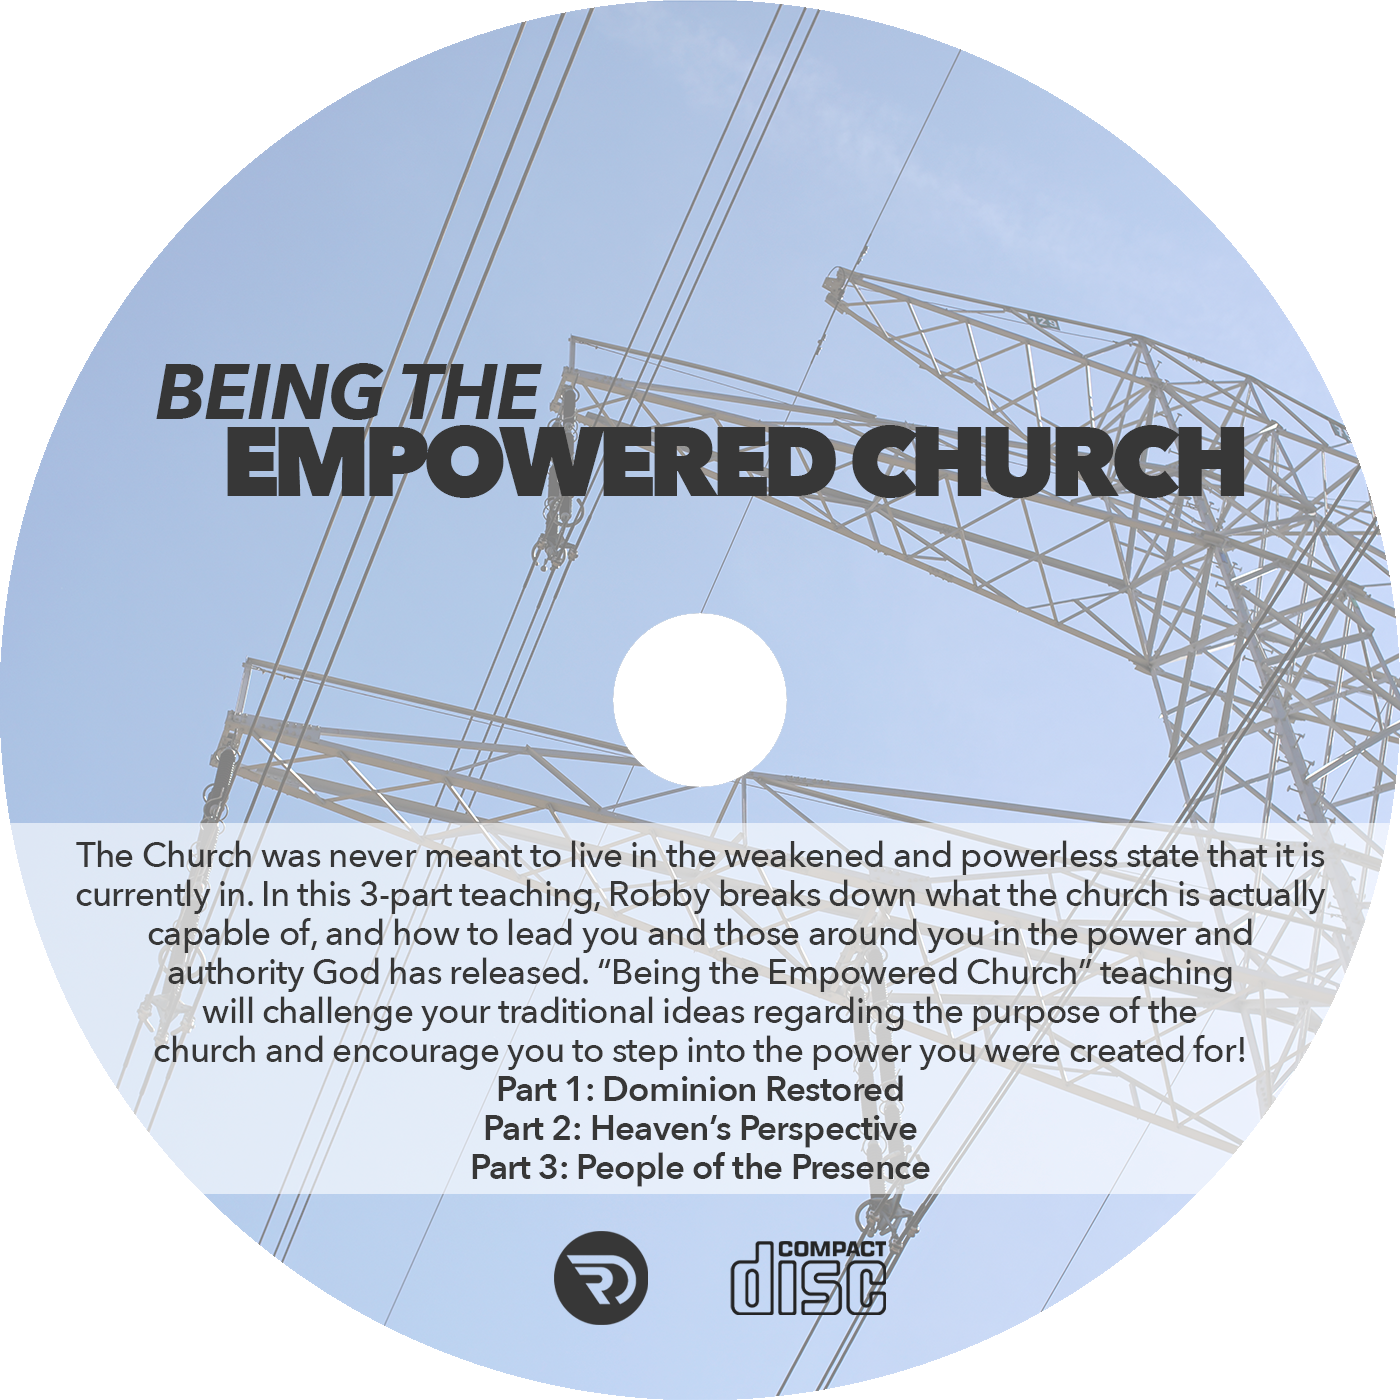 Empowered Church